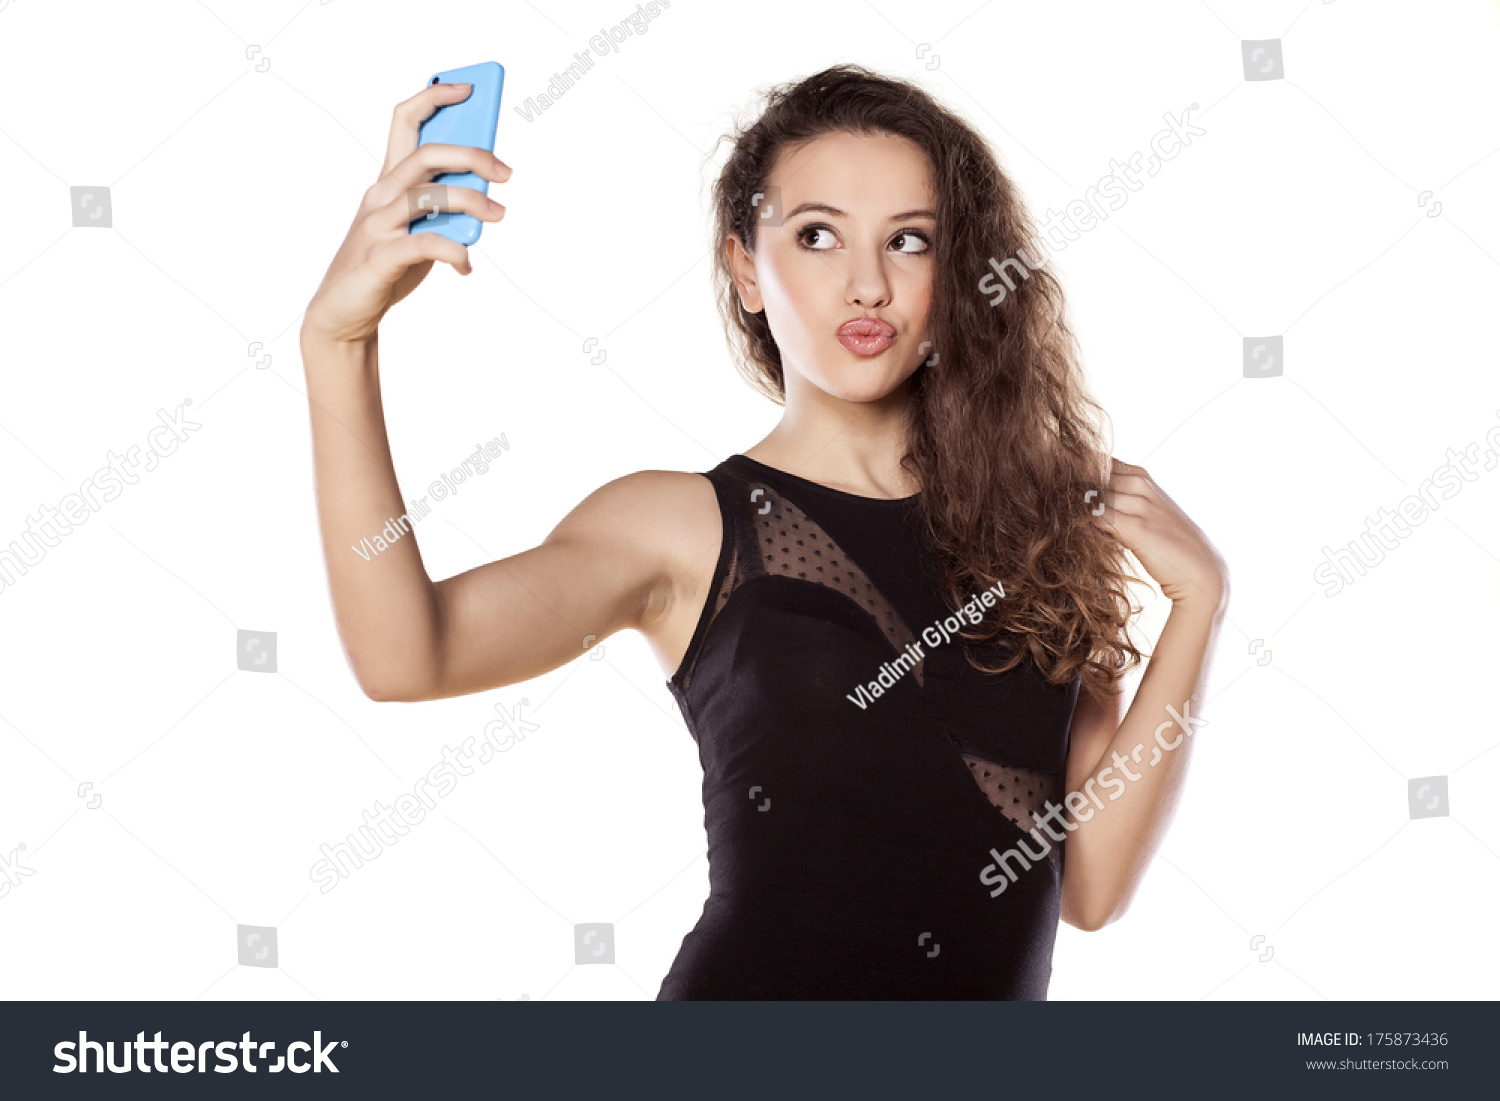 Cute Teen Girls Taking Selfies